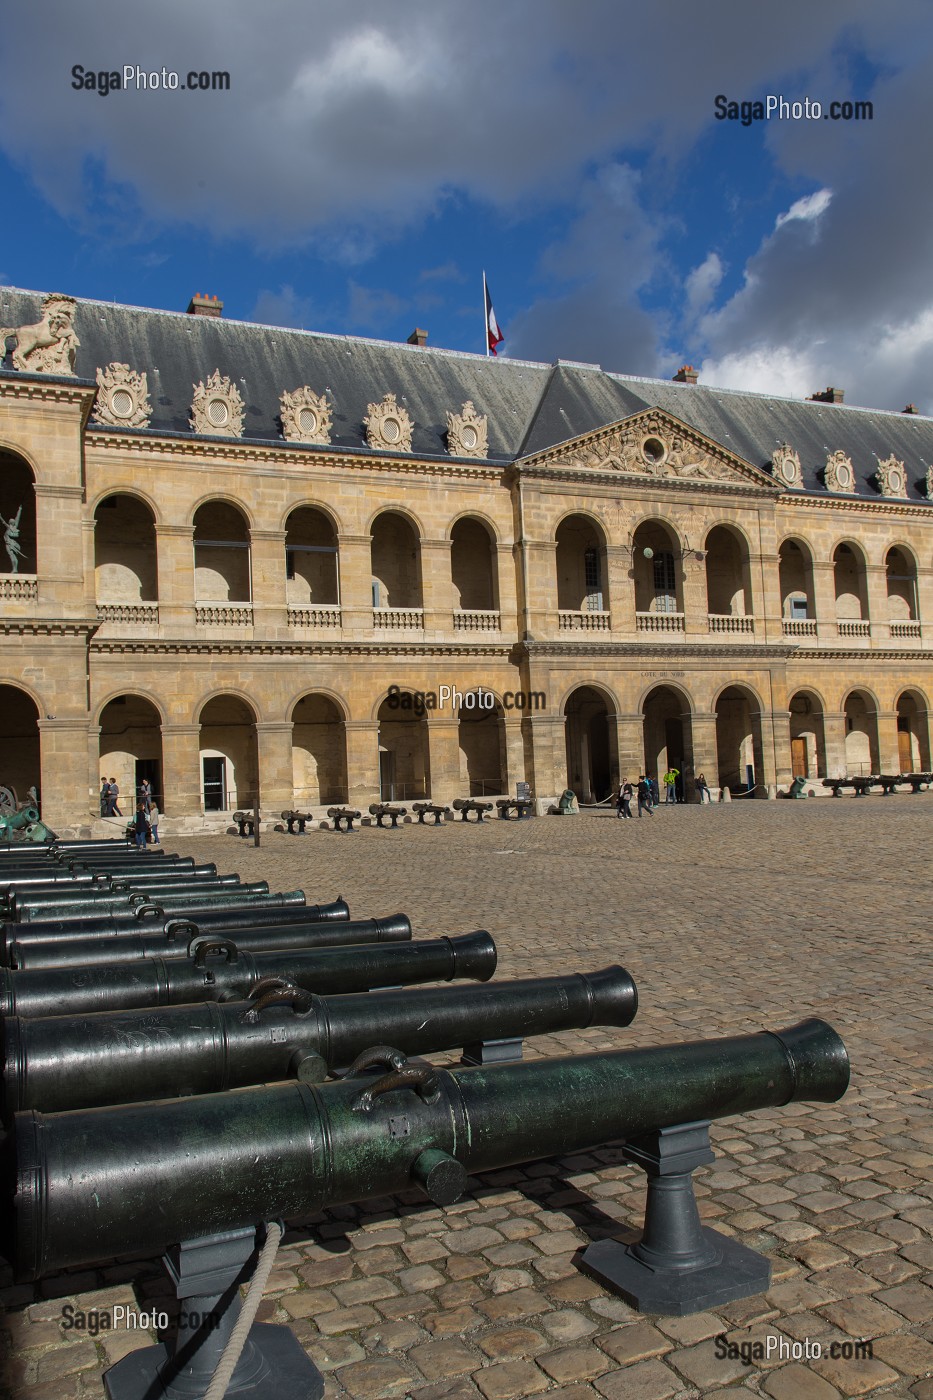 HOTEL NATIONAL DES INVALIDES, FONDE PAR LOUIS XIV EN 1670 POUR ACCUEILLIR LES SOLDATS INVALIDES, PARIS (75), ILE-DE-FRANCE, FRANCE 